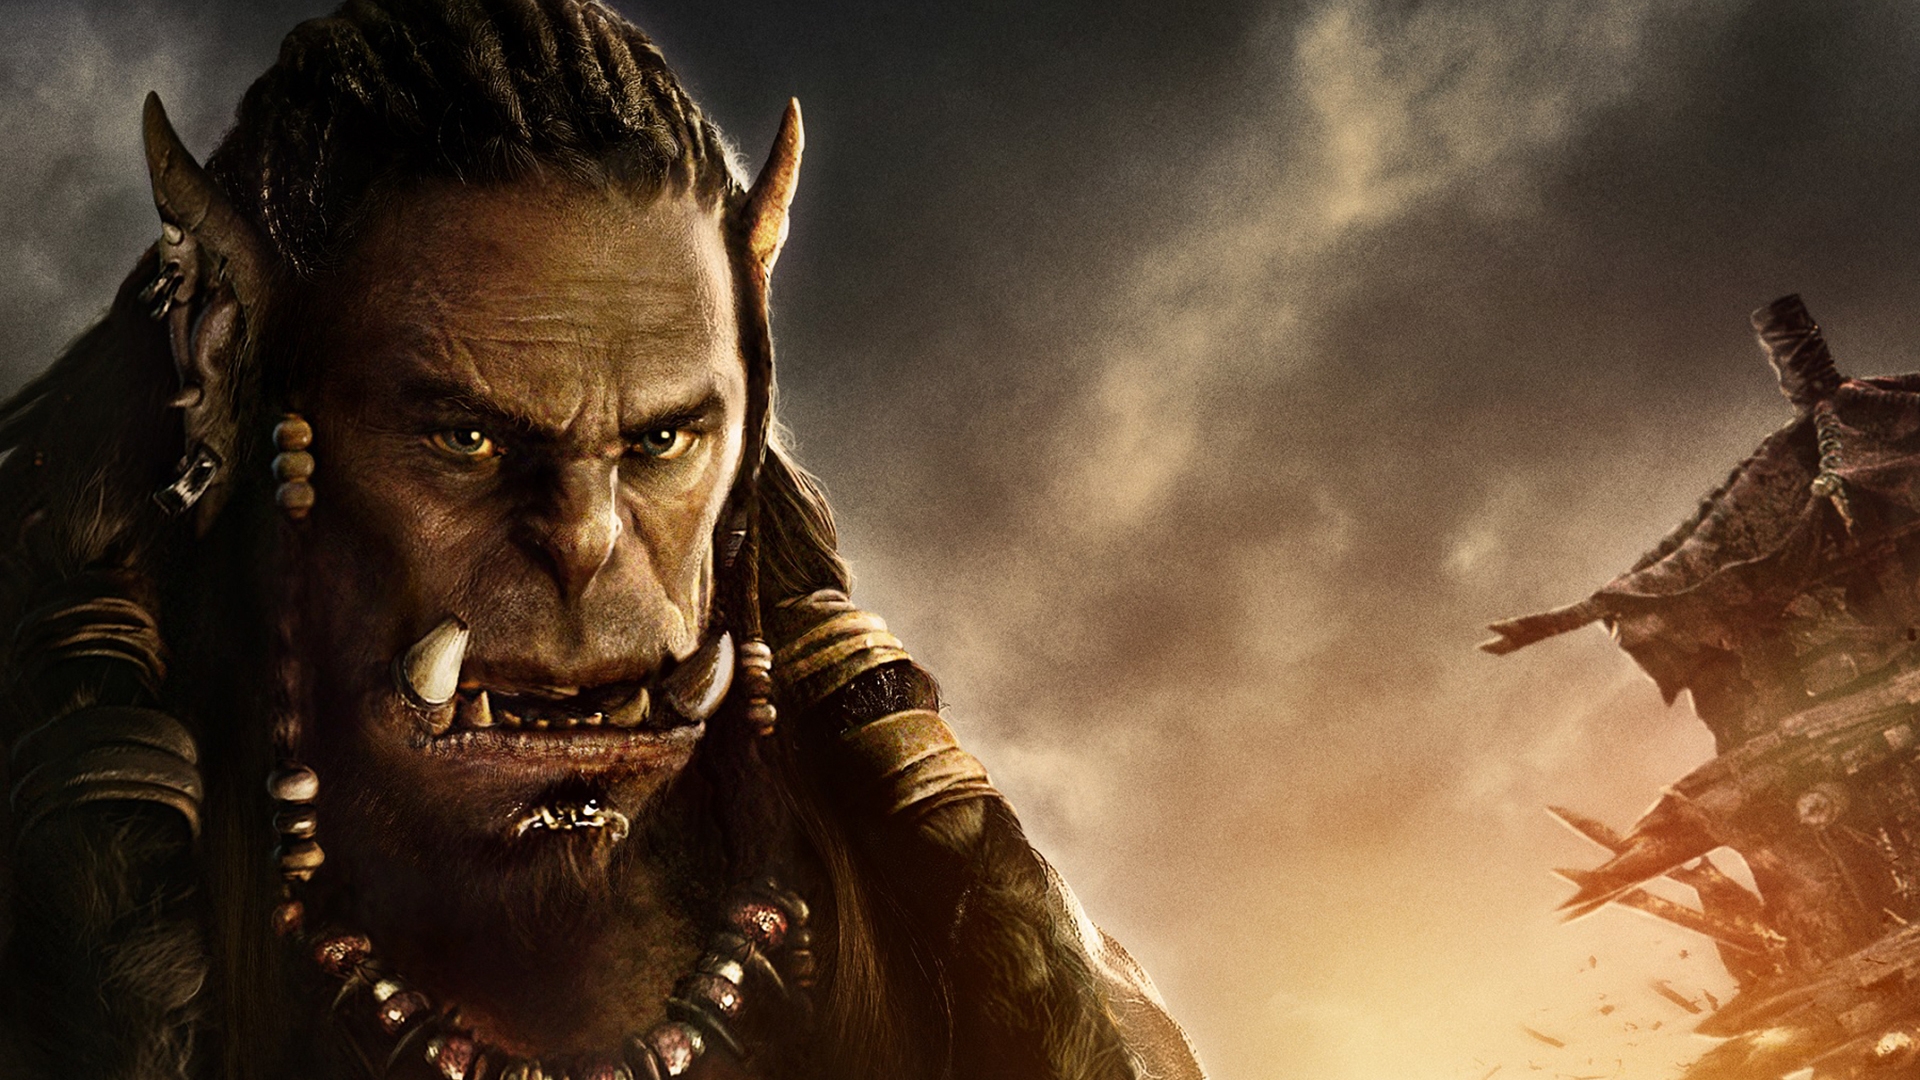 Warcraft Movie 2016 Durotan for 1920 x 1080 HDTV 1080p resolution